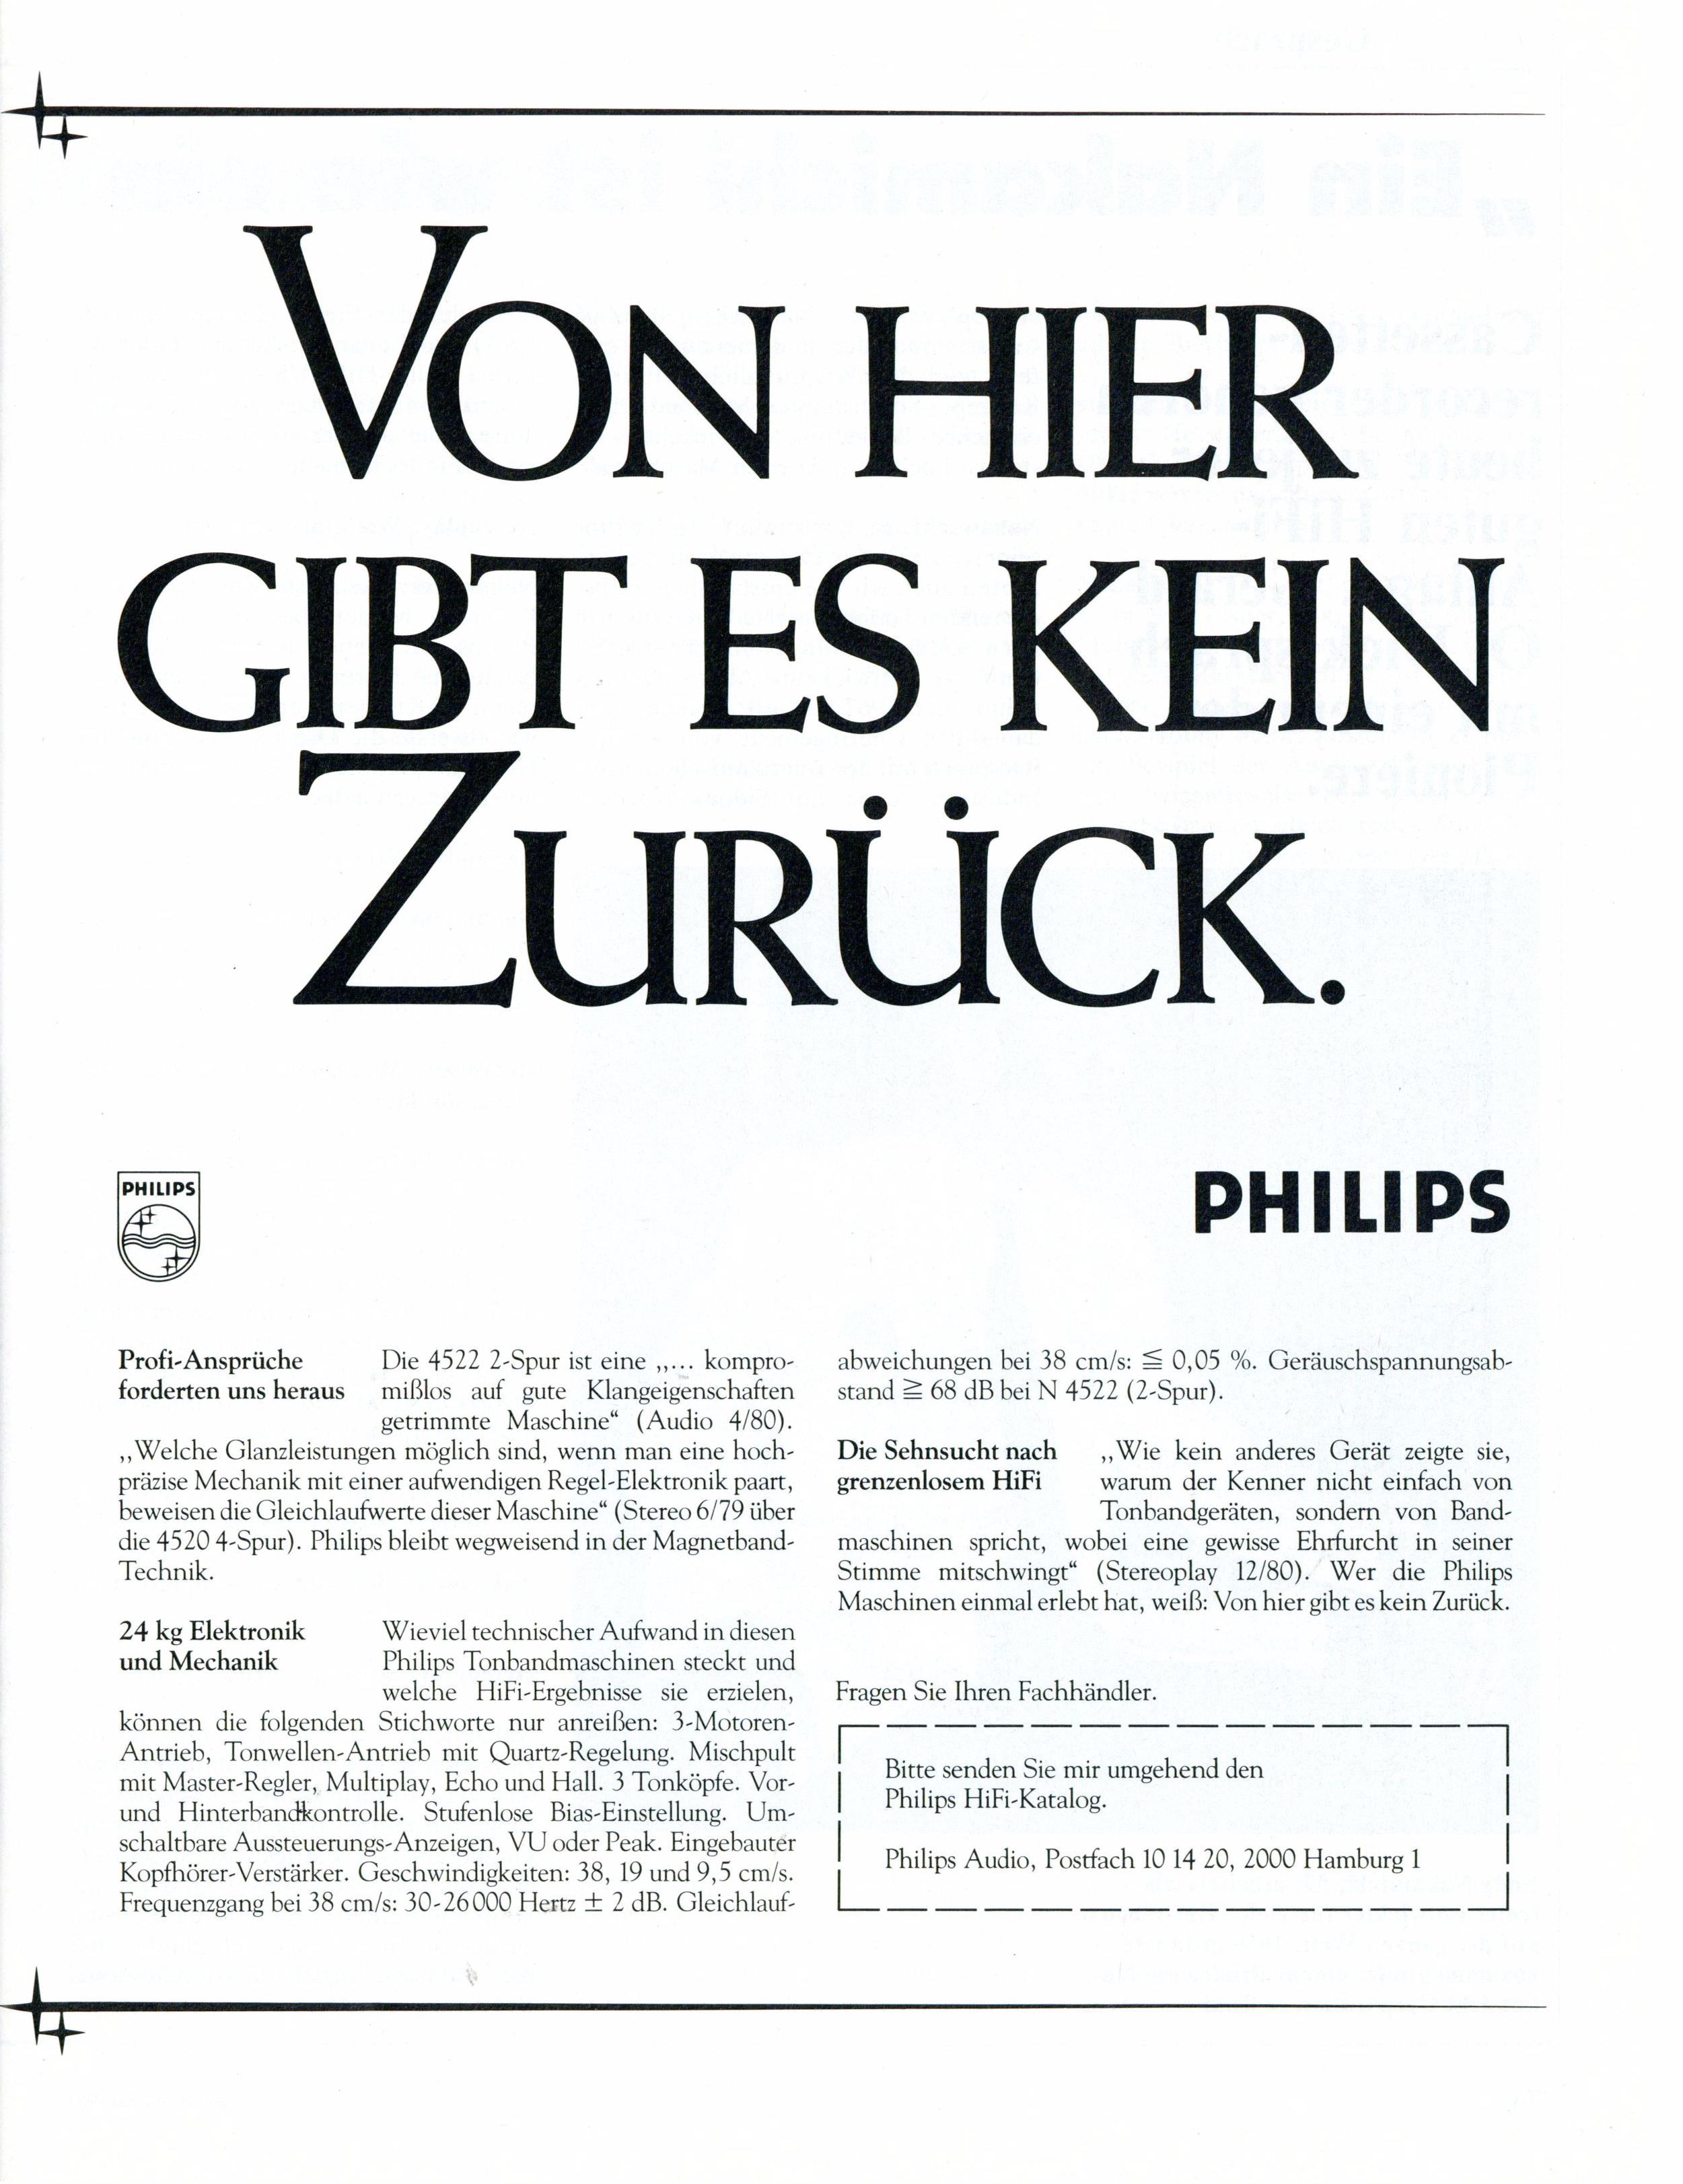 Philips 1981 2-2.jpg